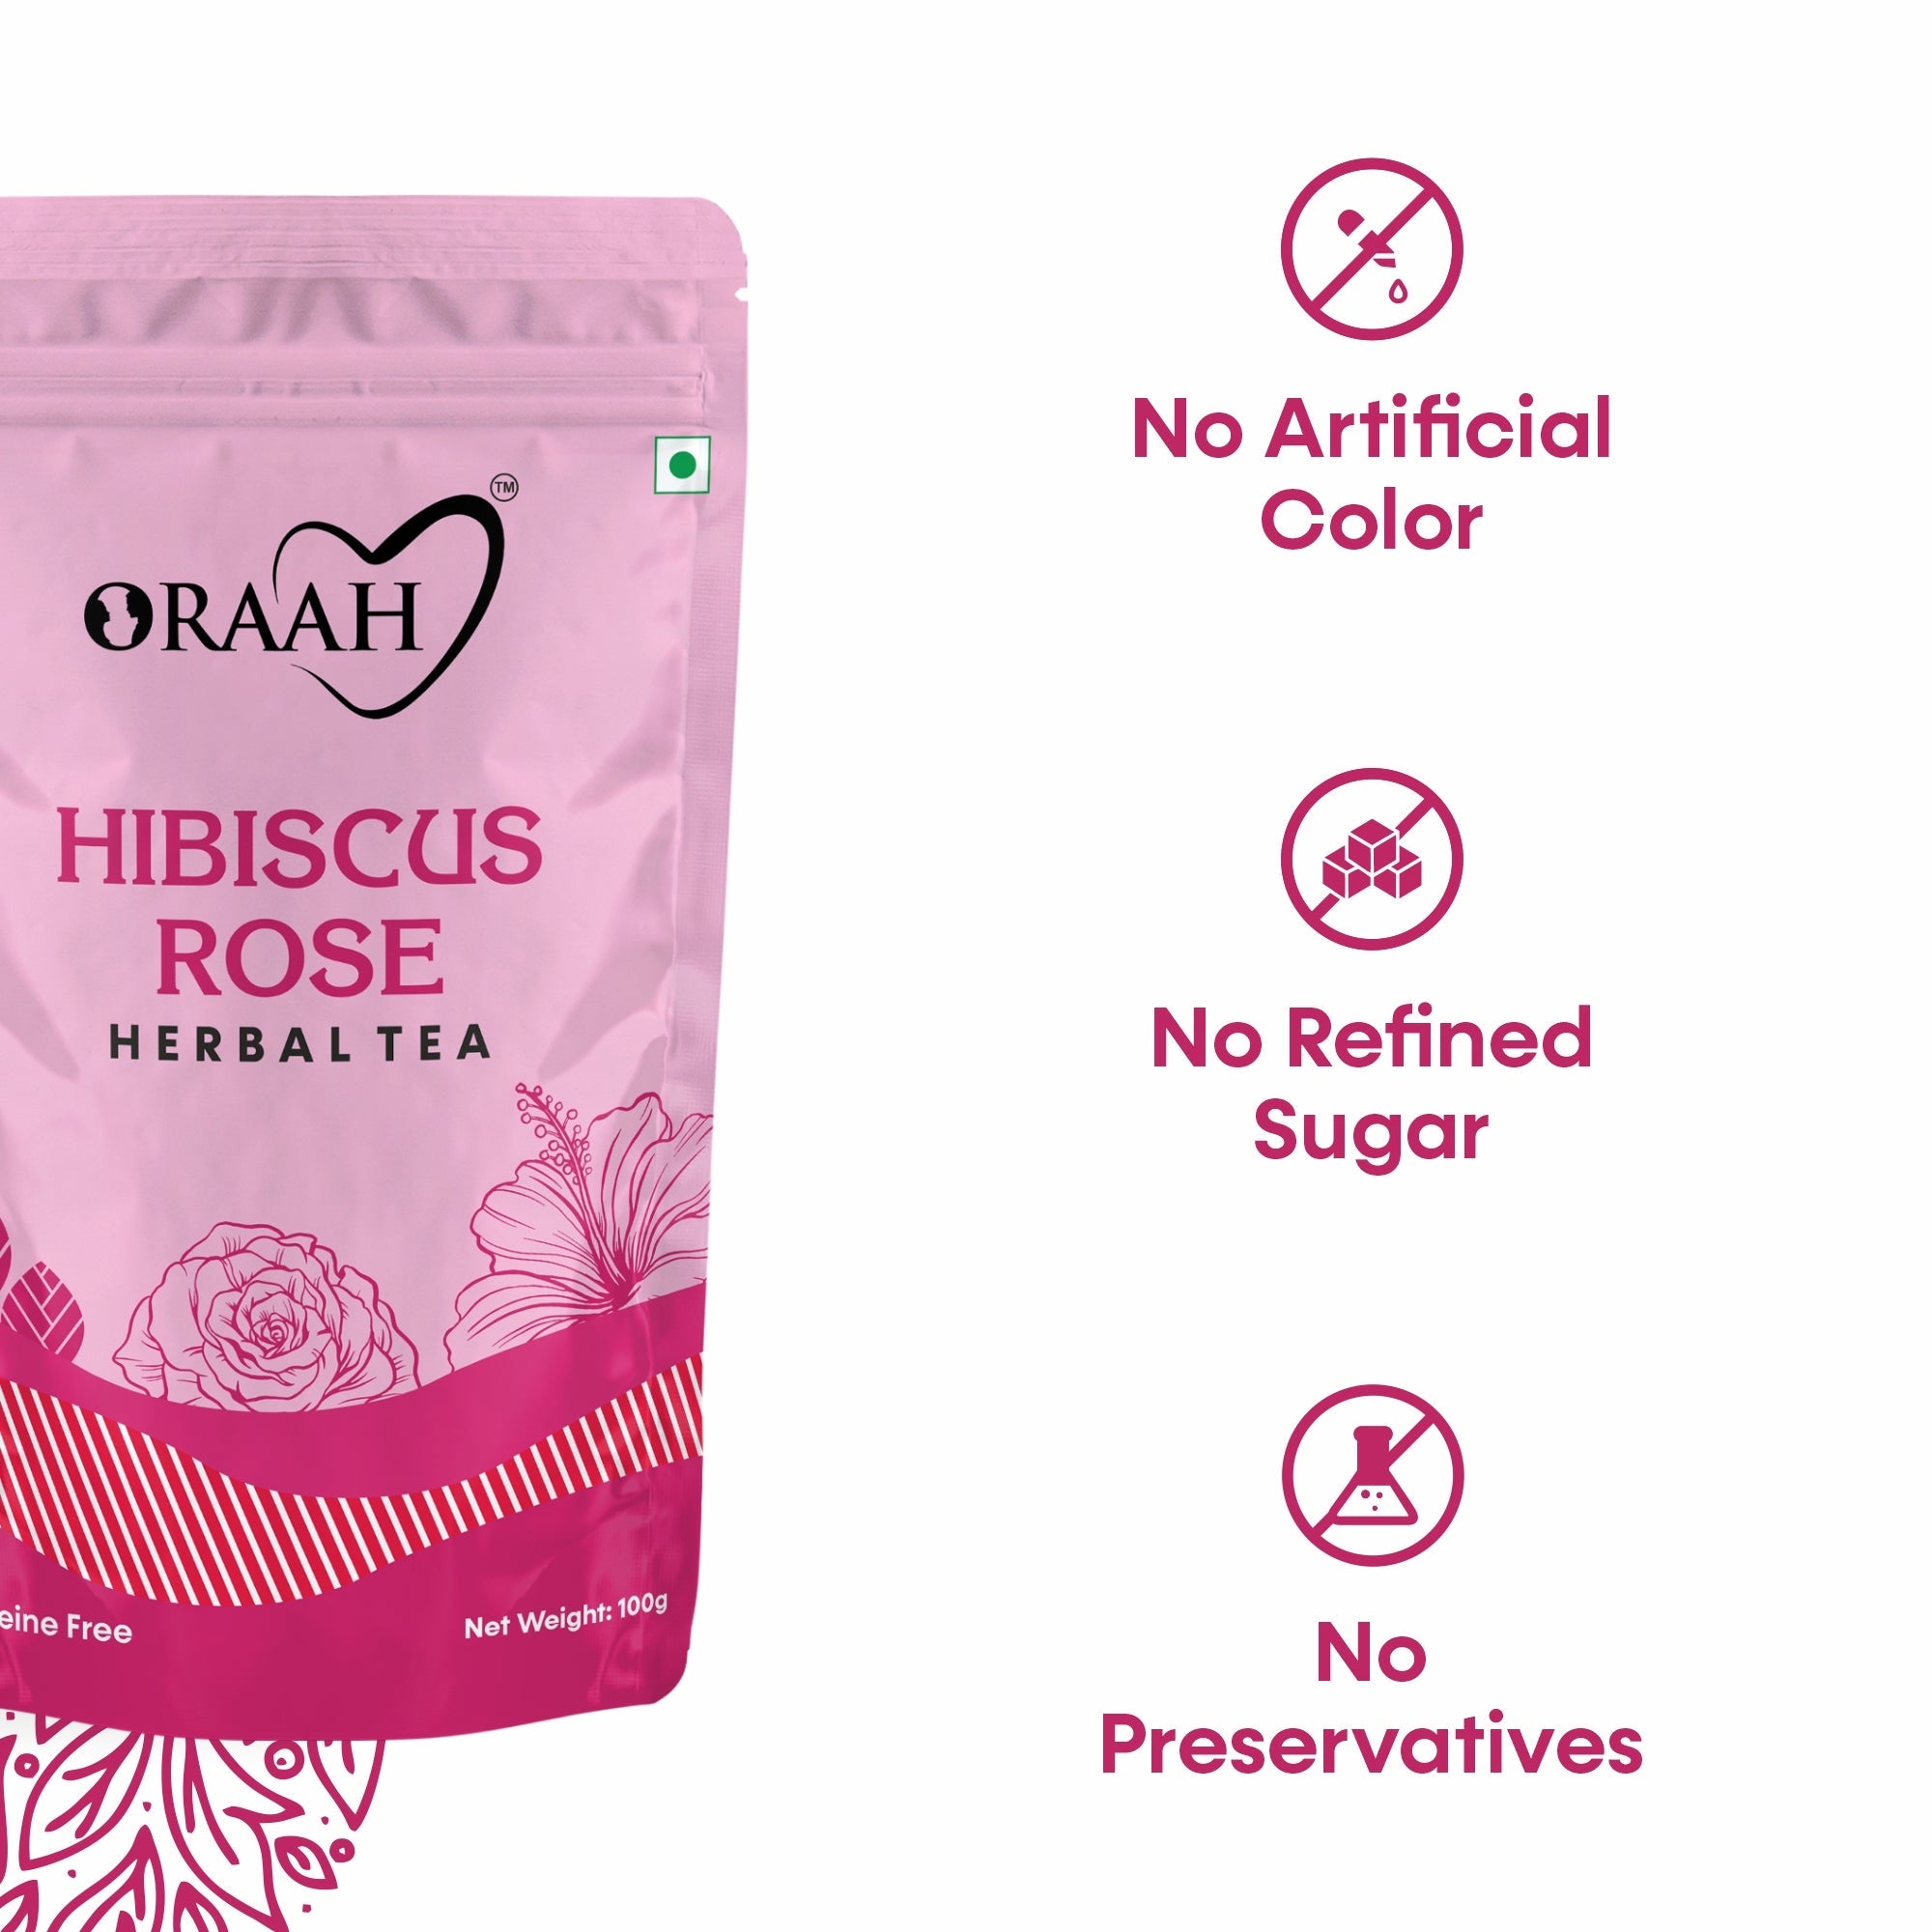 Oraah Hibiscus Rose Herbal Tea